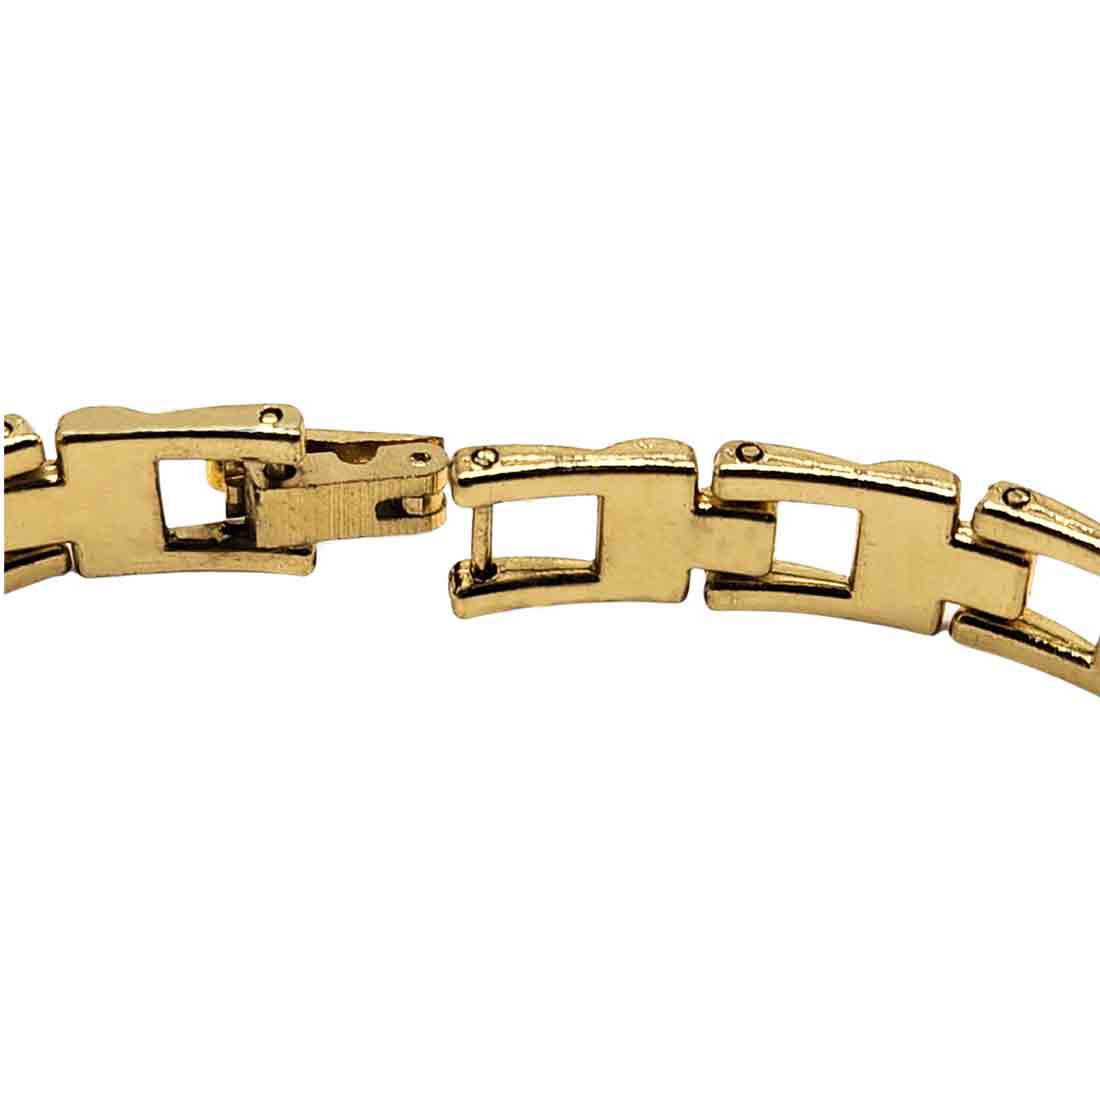 Men's stainless steel bracelets | 365 Styles for men in stock